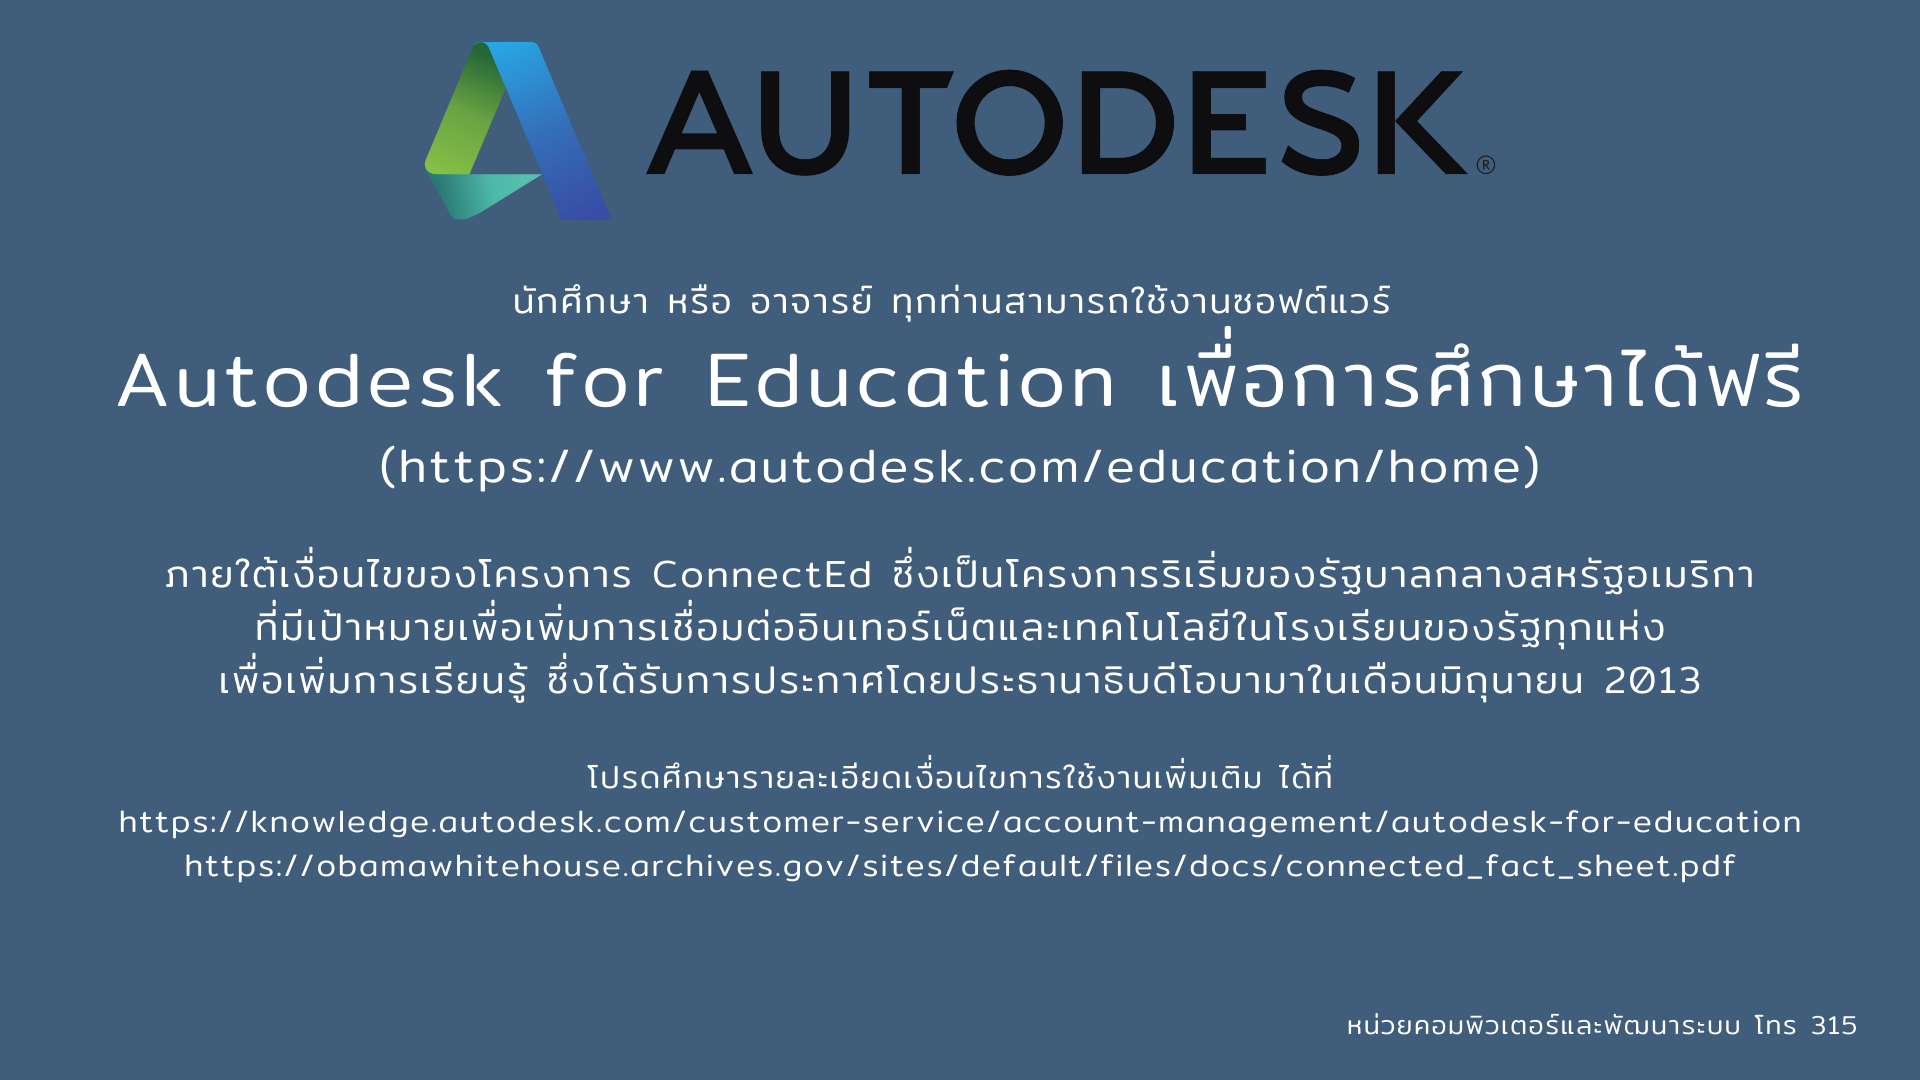 Autodesk Program